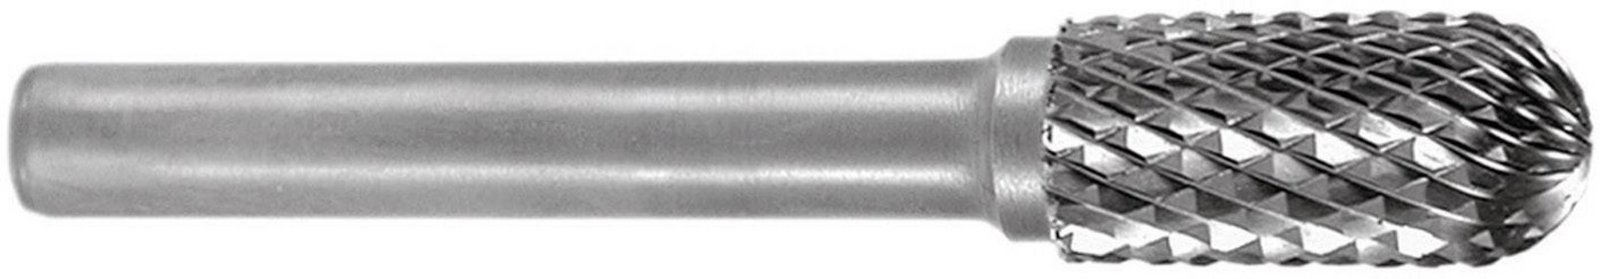 RUKO 116048 frézovací kolík  tvrdokov válec 3 mm Délka 38 mm   Ø hřídele 3 mm